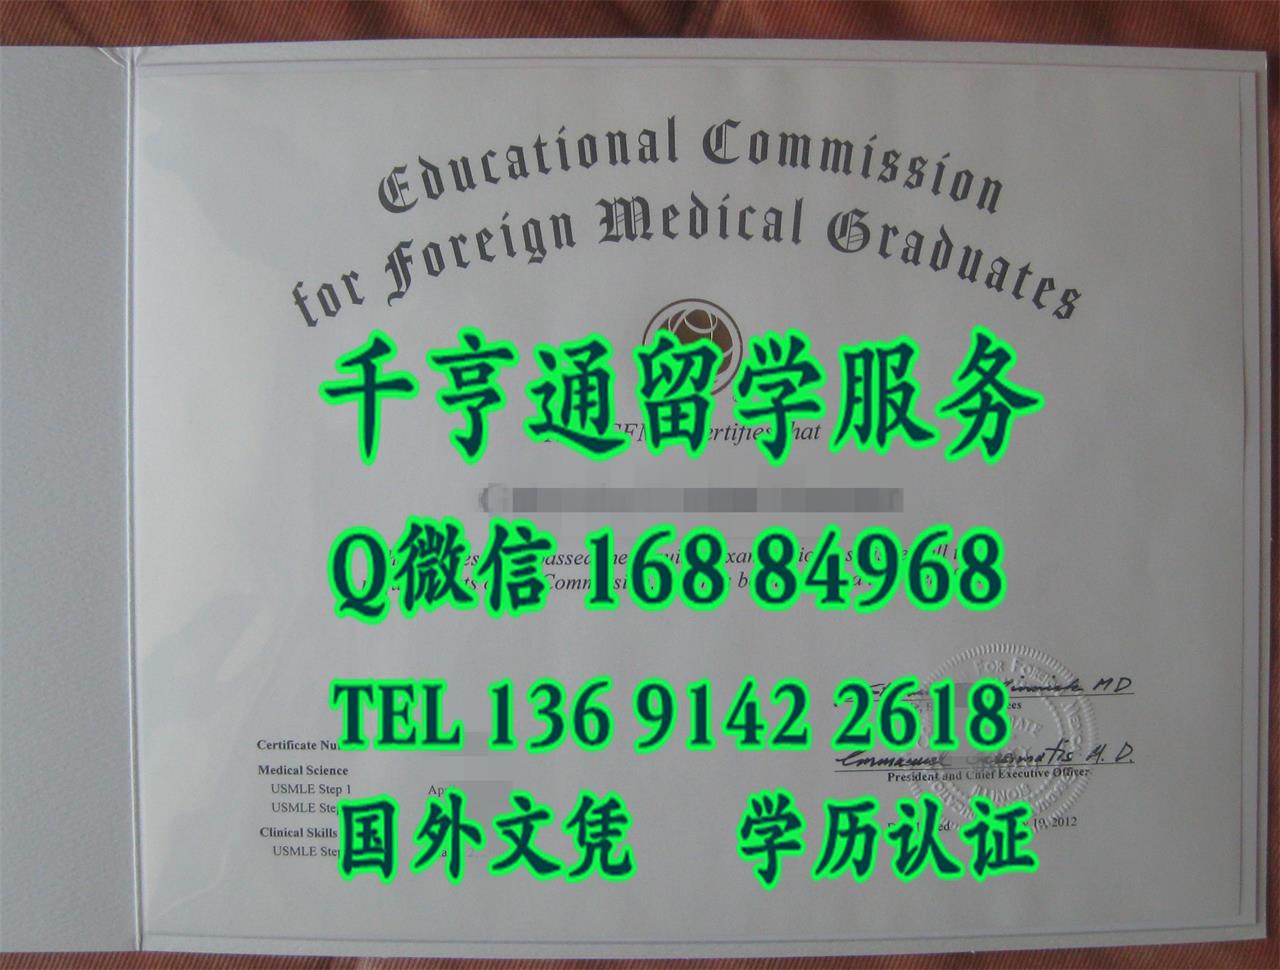 美国行医的基本资格(ECFMG证书)Educaitional Commission for Foreign Medical Graduates